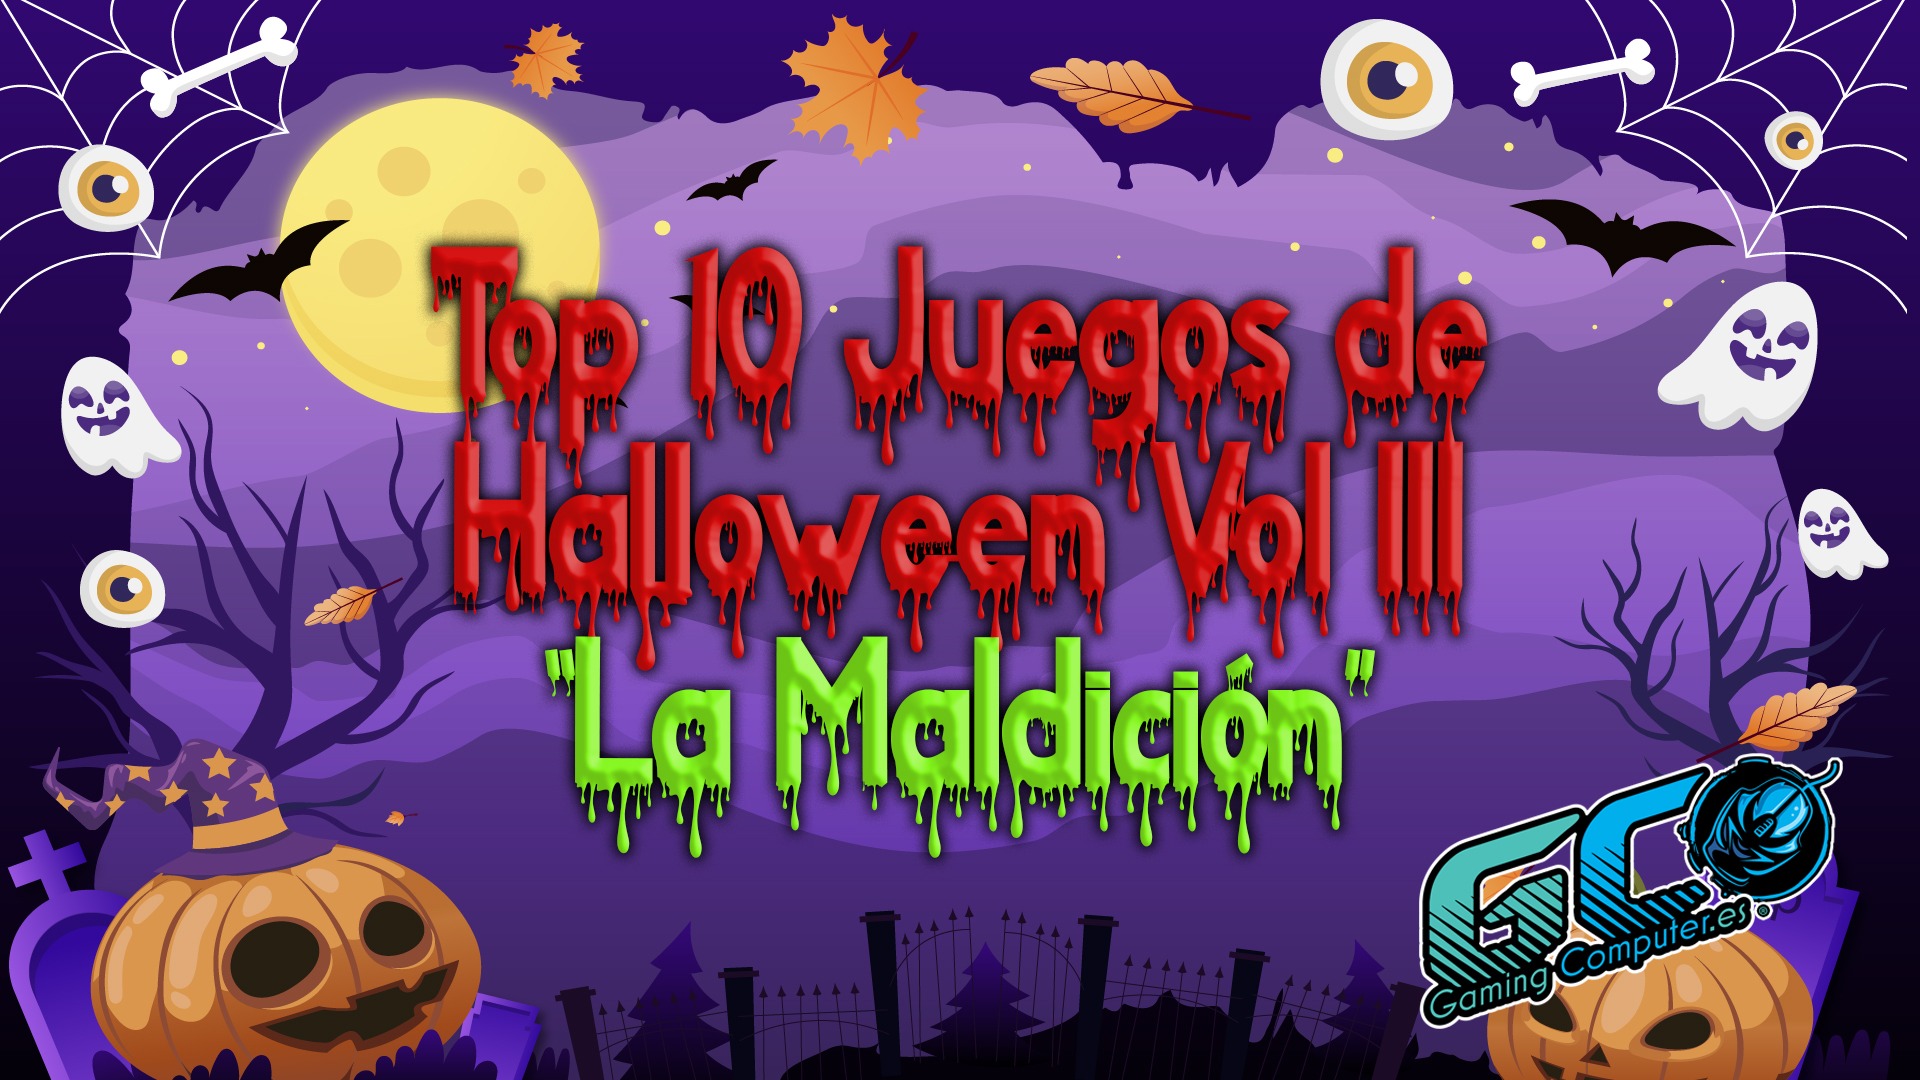 Los 10 mejores juegos para jugar la noche de Halloween Vol. 3